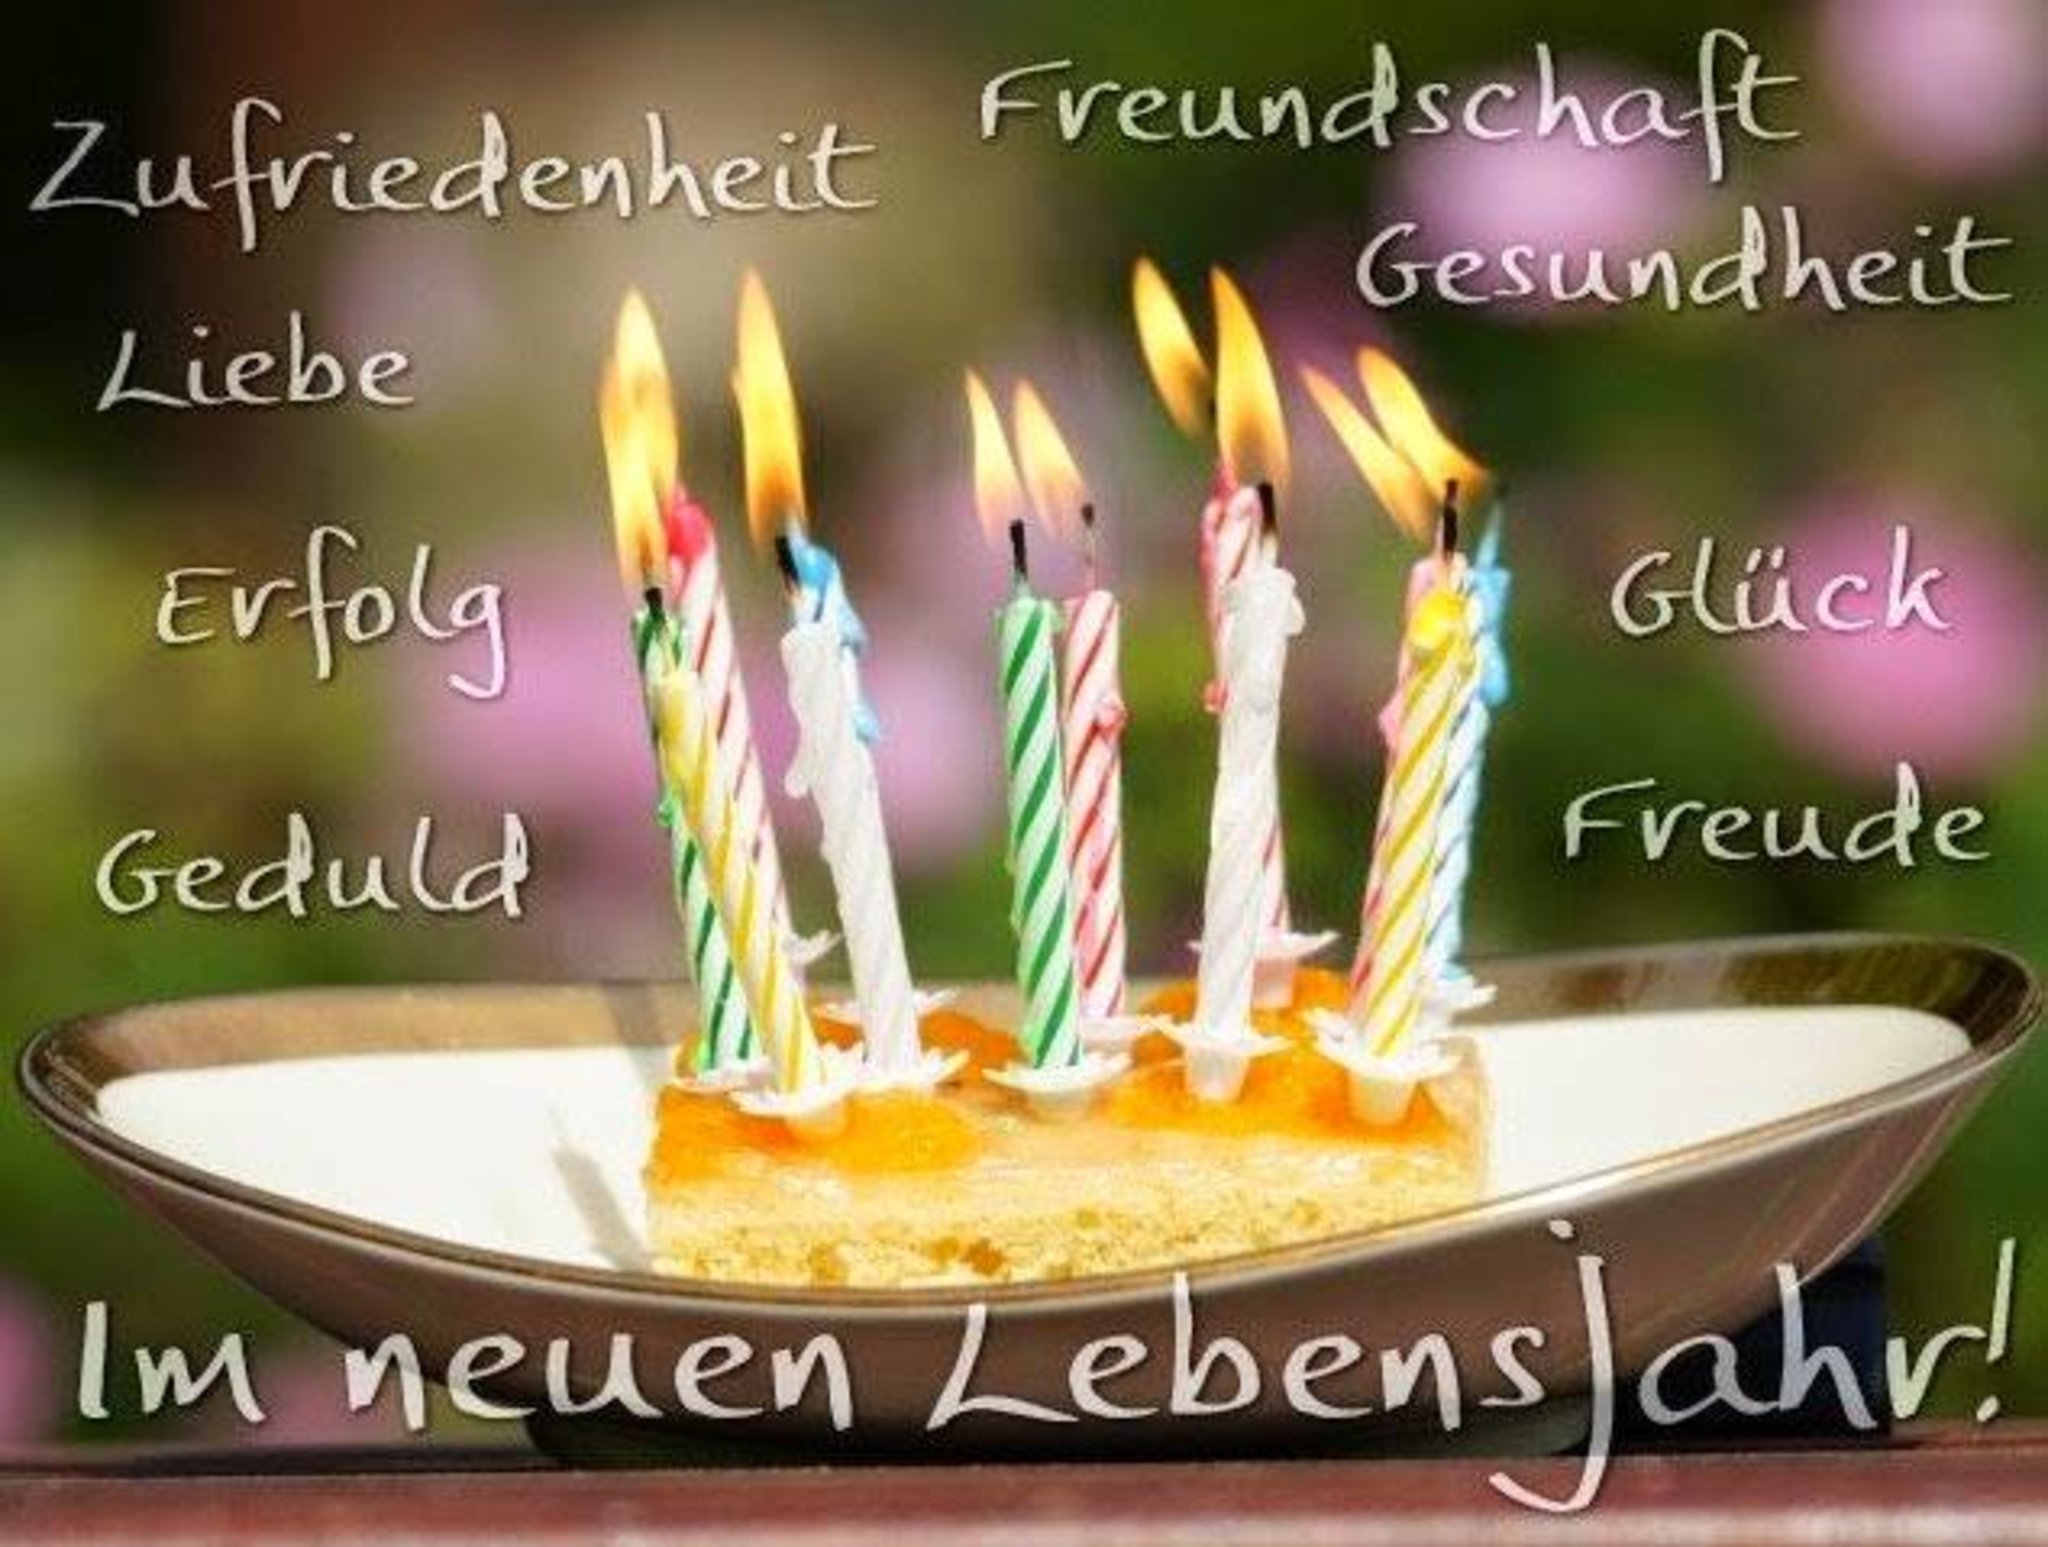 Открытка на немецком с днем рождения мужчине. Поздравление с днем рождения на немецком. Открытка с днём рождения на немецком языке. Поздравление с др на немецком языке. Поздравления с днём рождения мужчине на немецком языке.